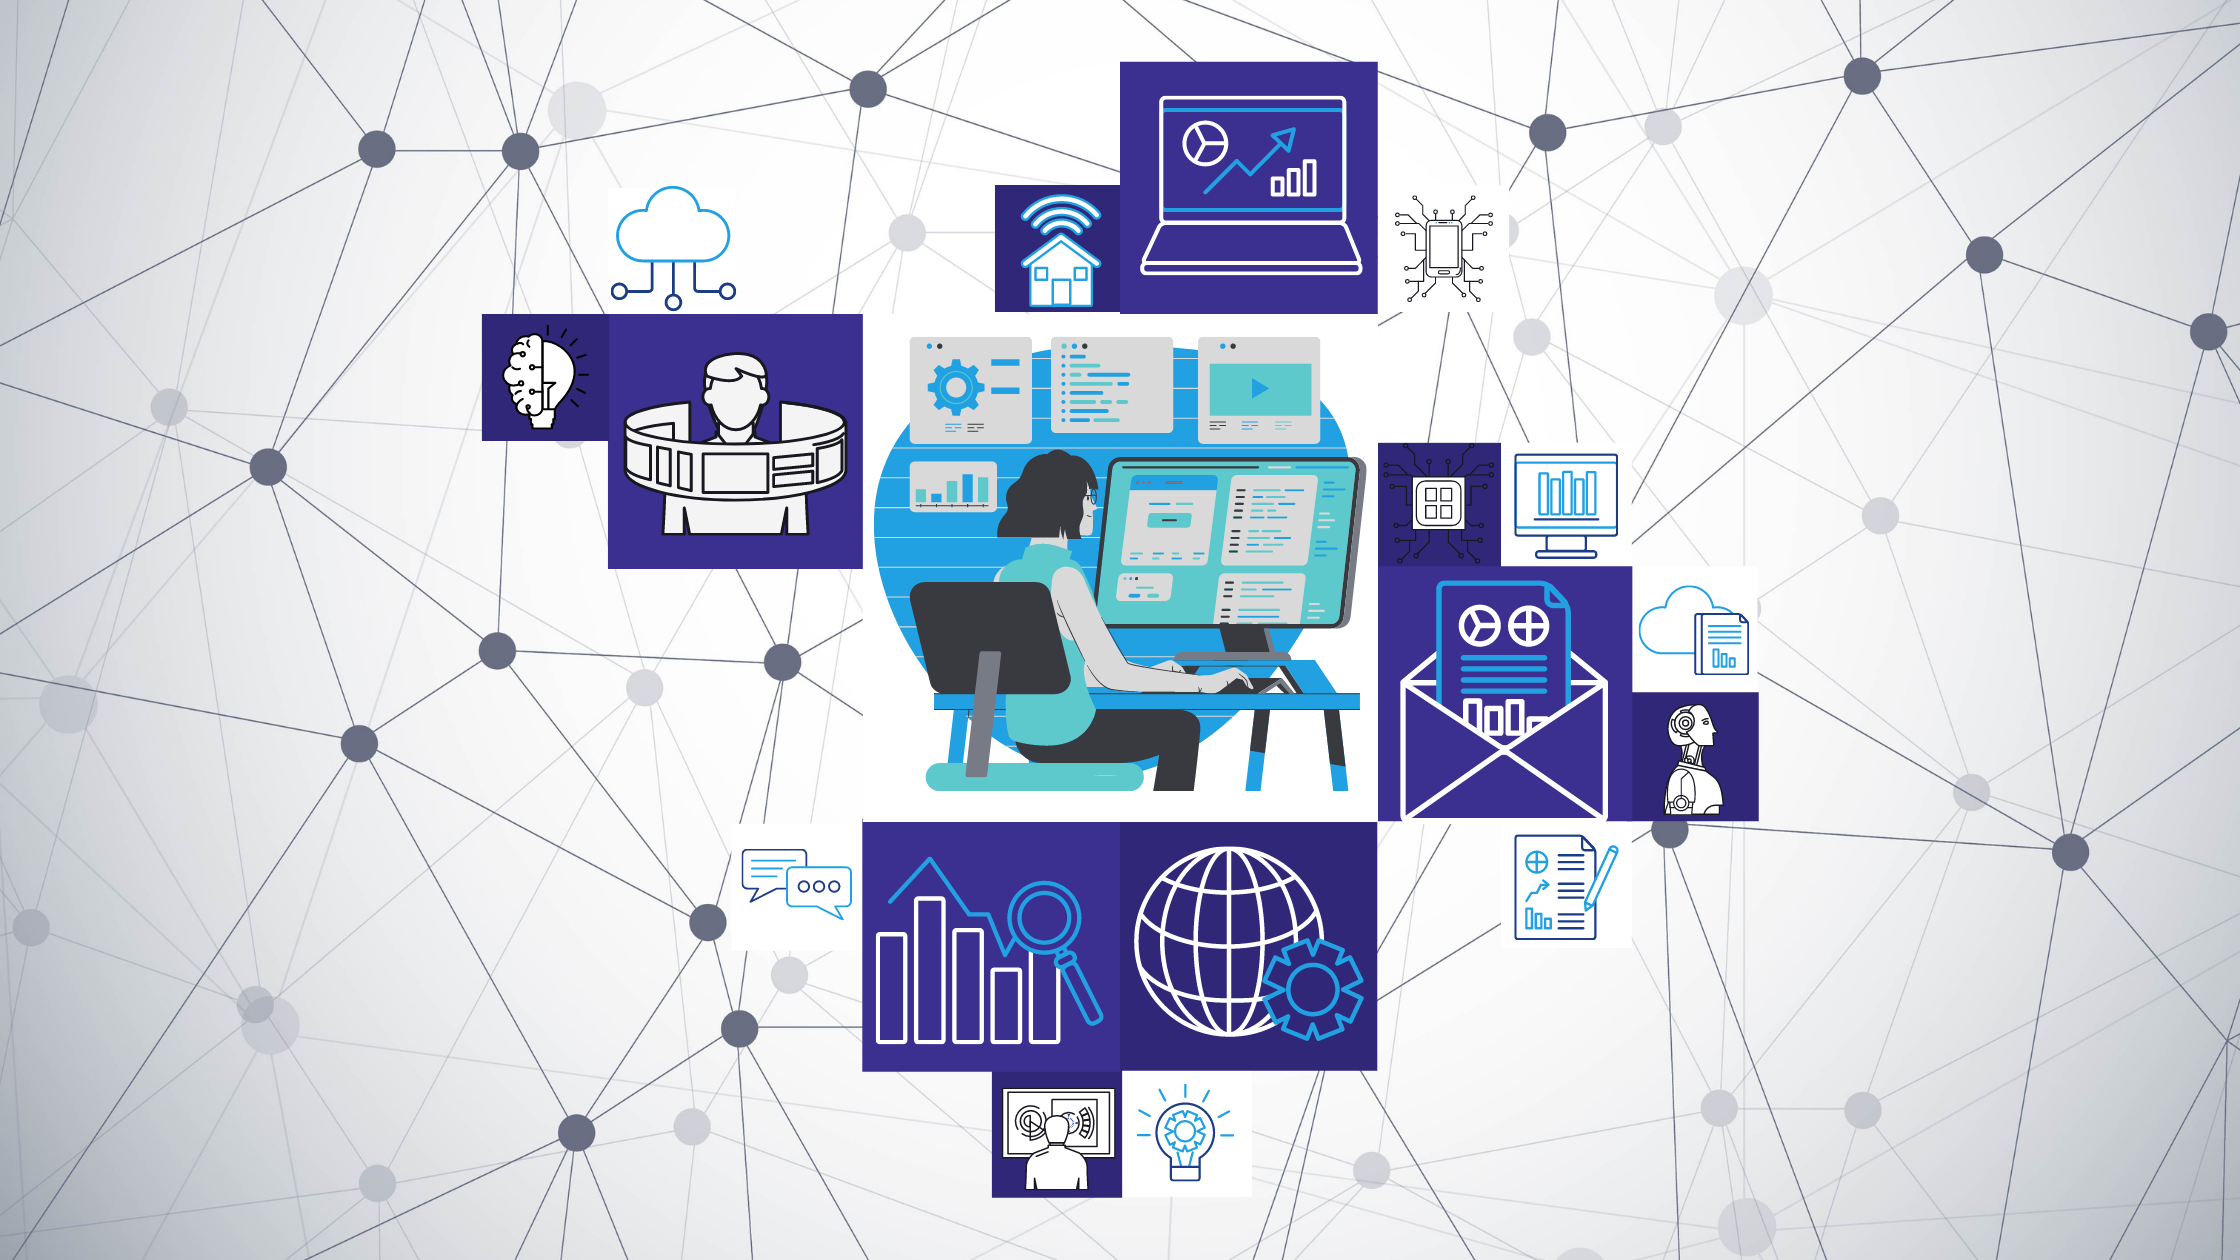 A imagem contém diversos quadros em branco e tons de azul com ícones relacionados à tecnologia da informação, tais como nuvens, dados, gráficos, robôs, computadores, etc. Em destaque no quadro central uma pessoa sentada analisando dados em uma tela de computador.